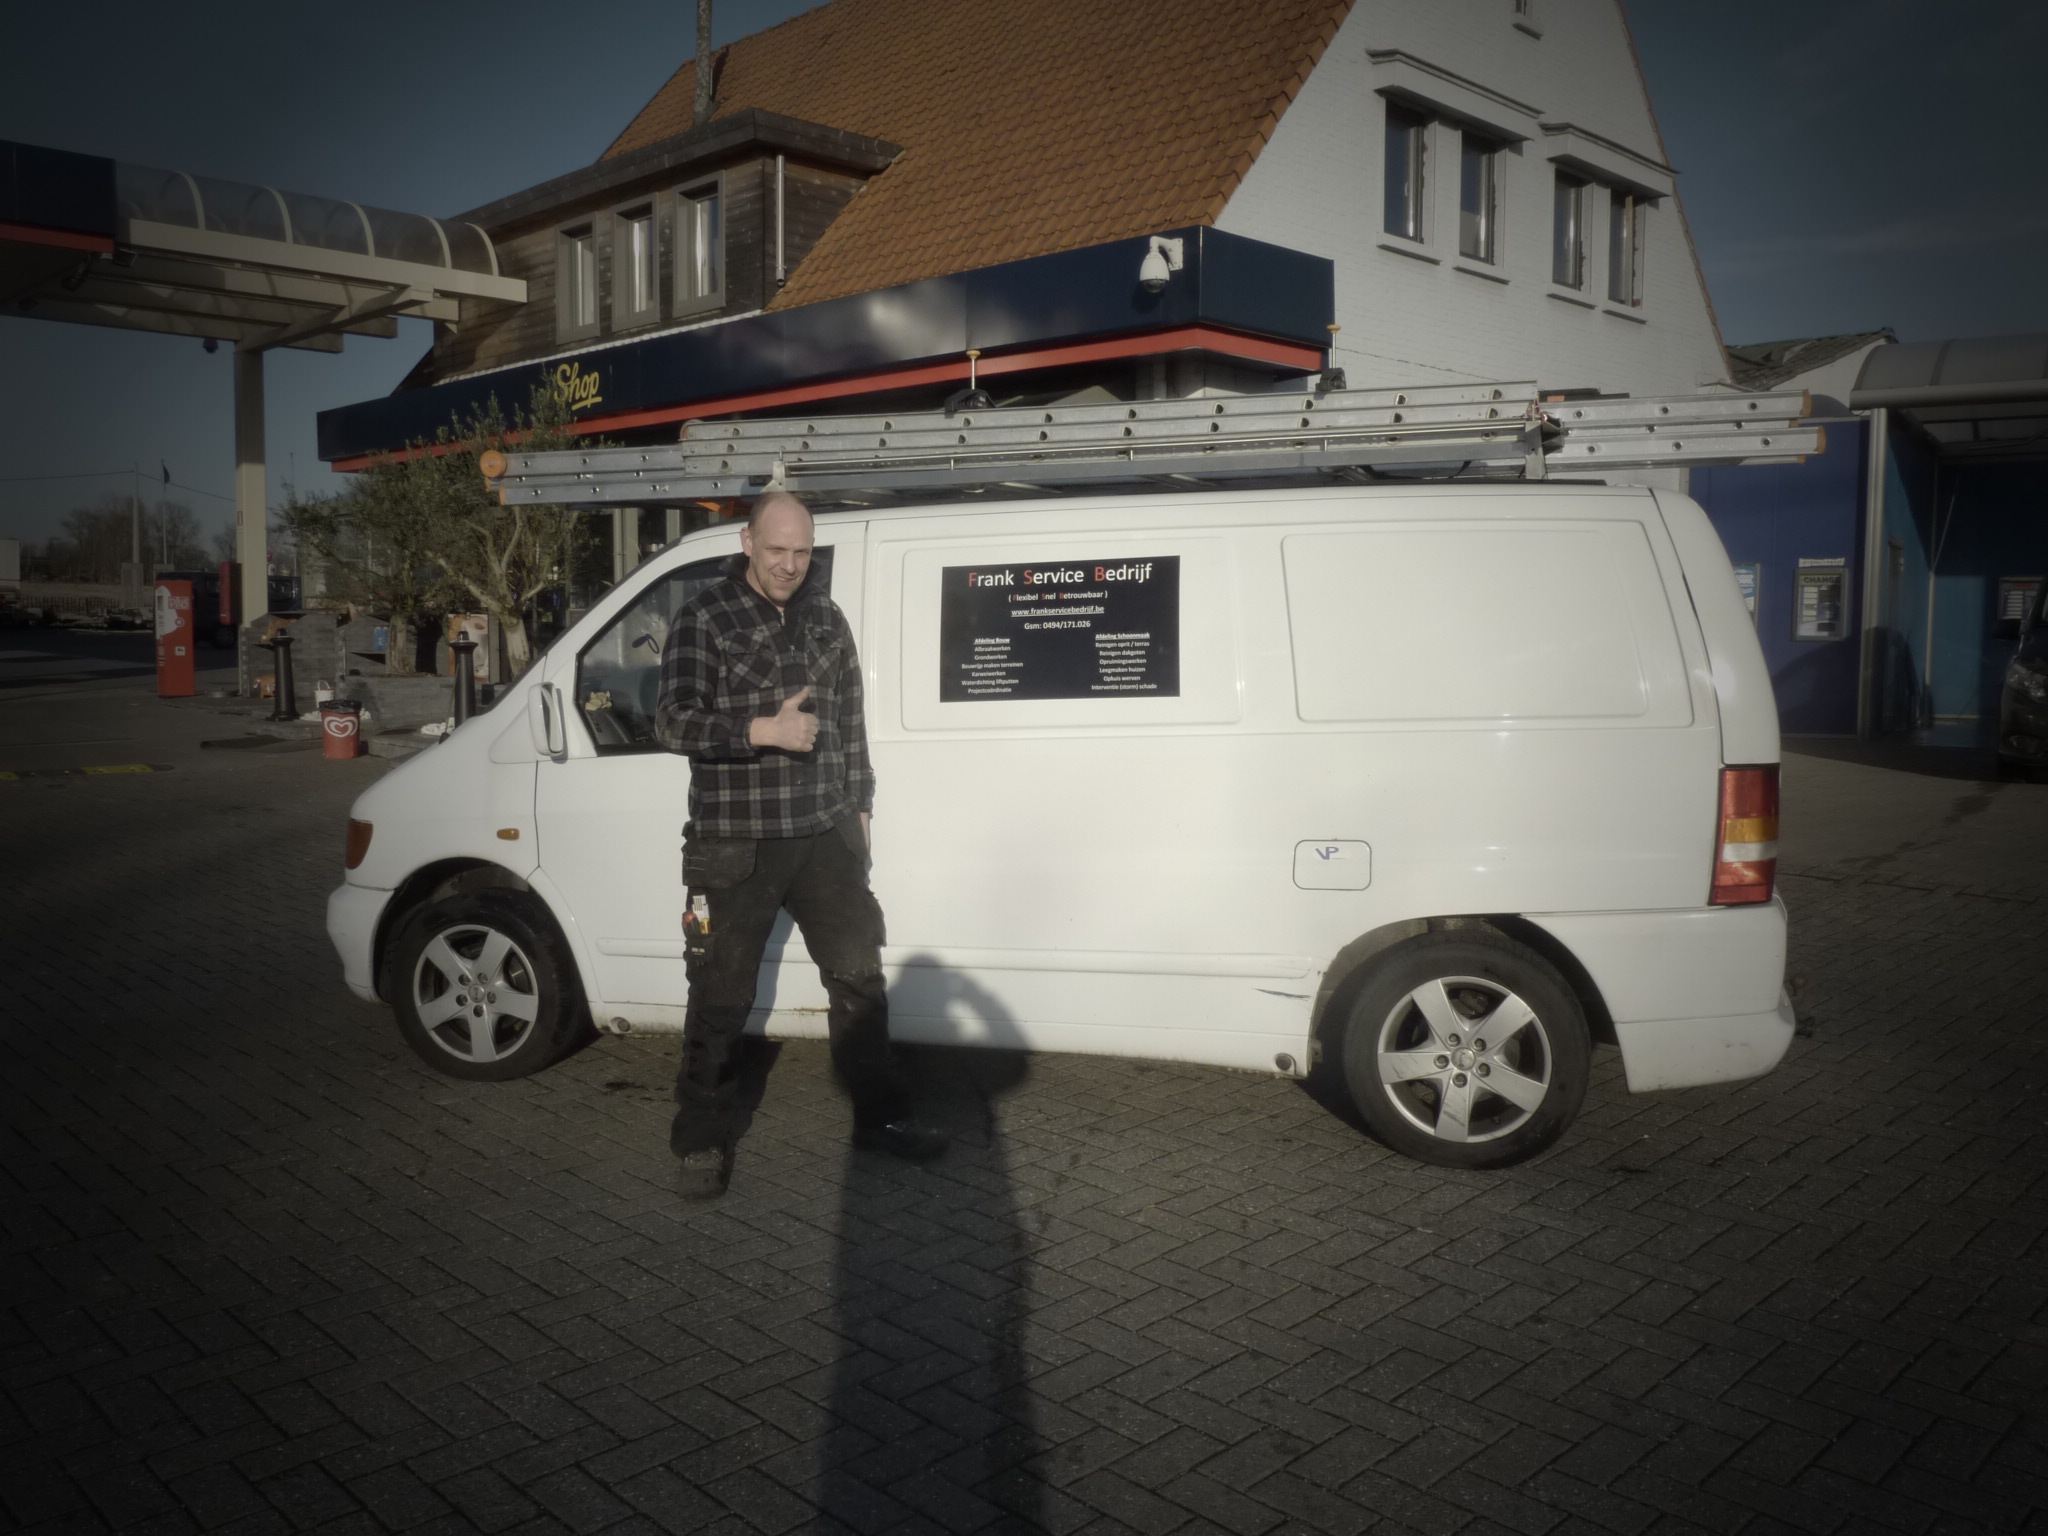 klusjesmannen Wilrijk | Frank Service Bedrijf